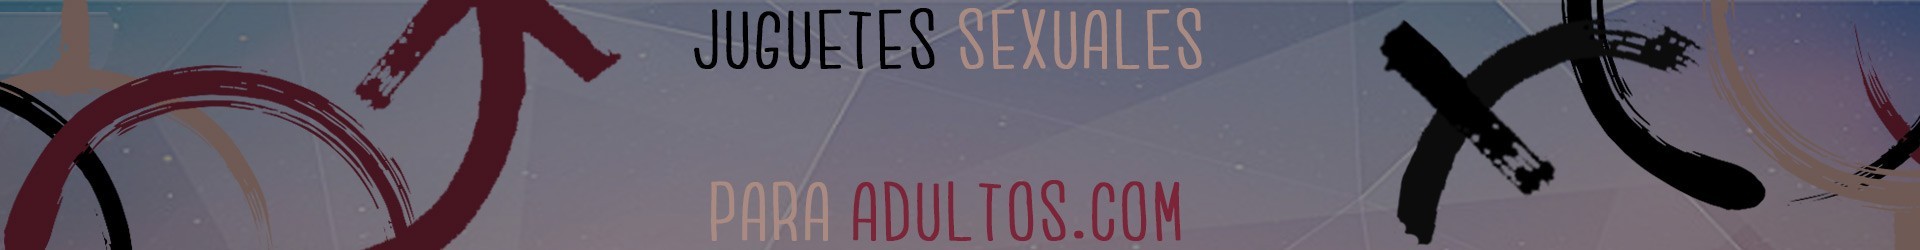 BDSM / Jaulas Anillo Castidad - Juguetes Sexuales Sex Shop